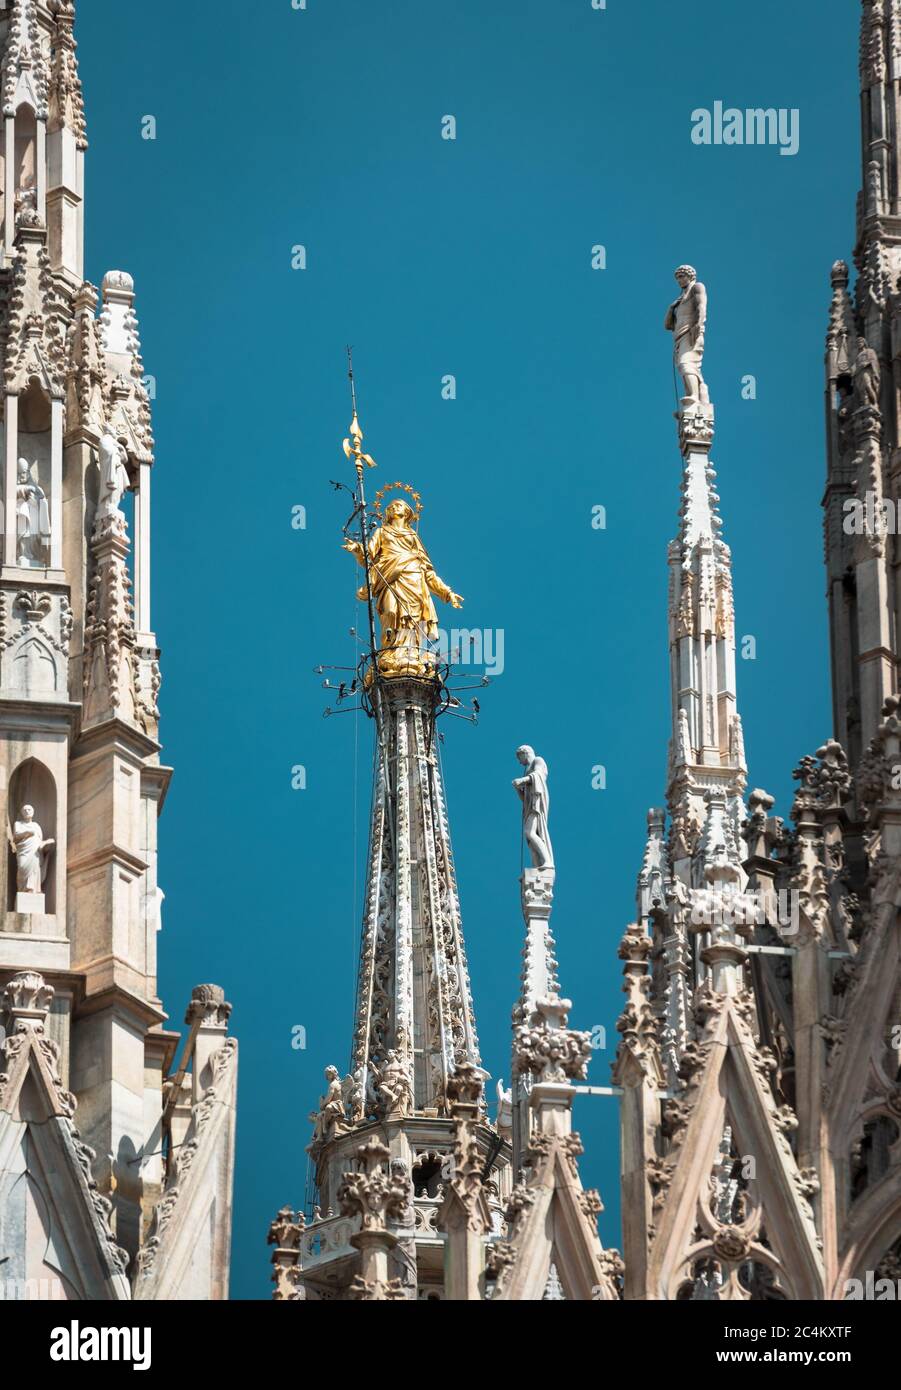 Mailänder Dom Türme, Italien. Goldene Statue der Madonna auf blauem Himmel Hintergrund. Der berühmte Mailänder Dom oder der Mailänder Dom ist das Wahrzeichen der Altstadt Mailands Stockfoto